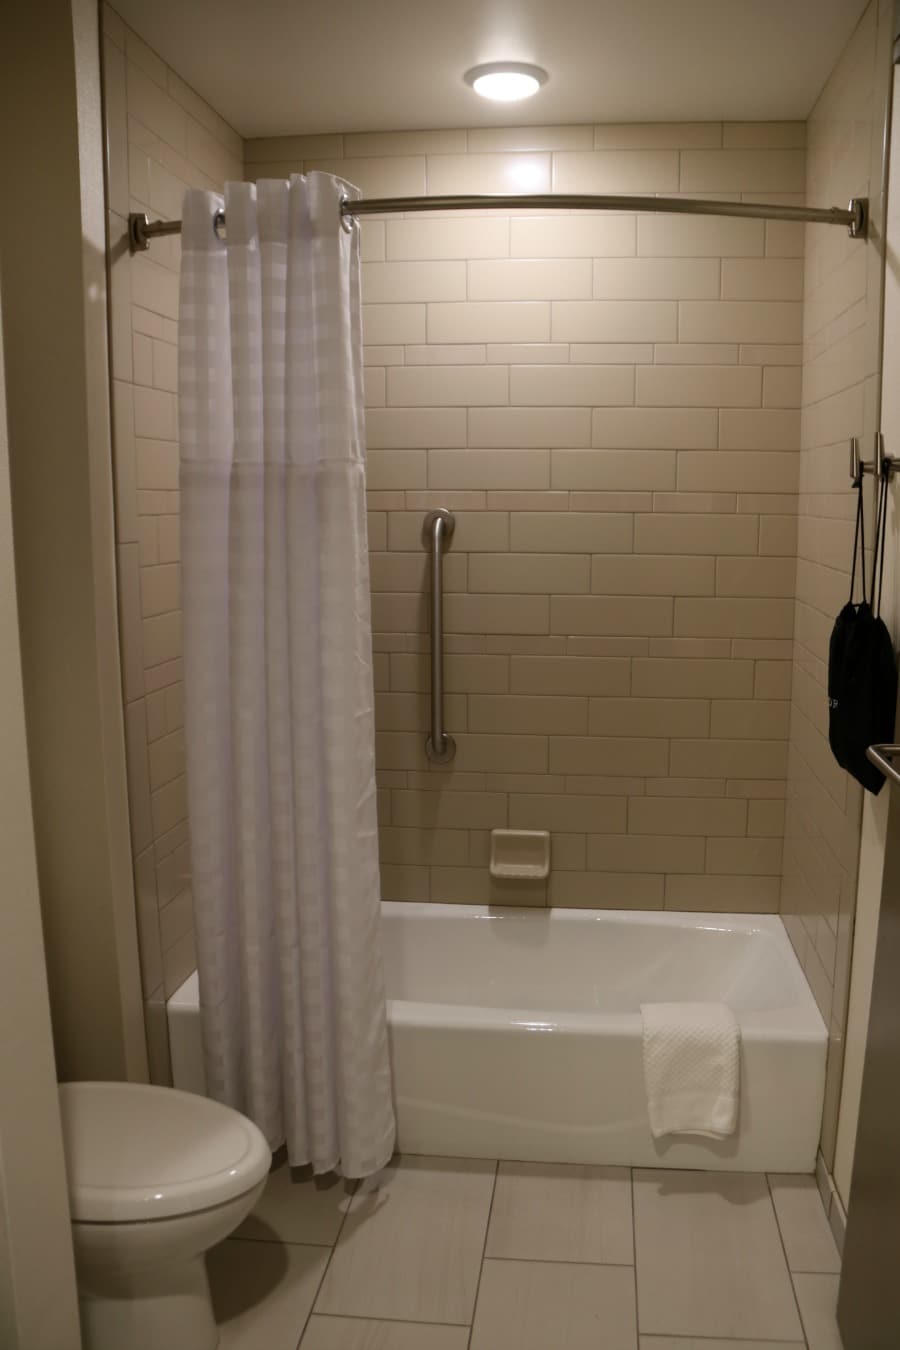 Bathroom Embassy Suites Syracuse